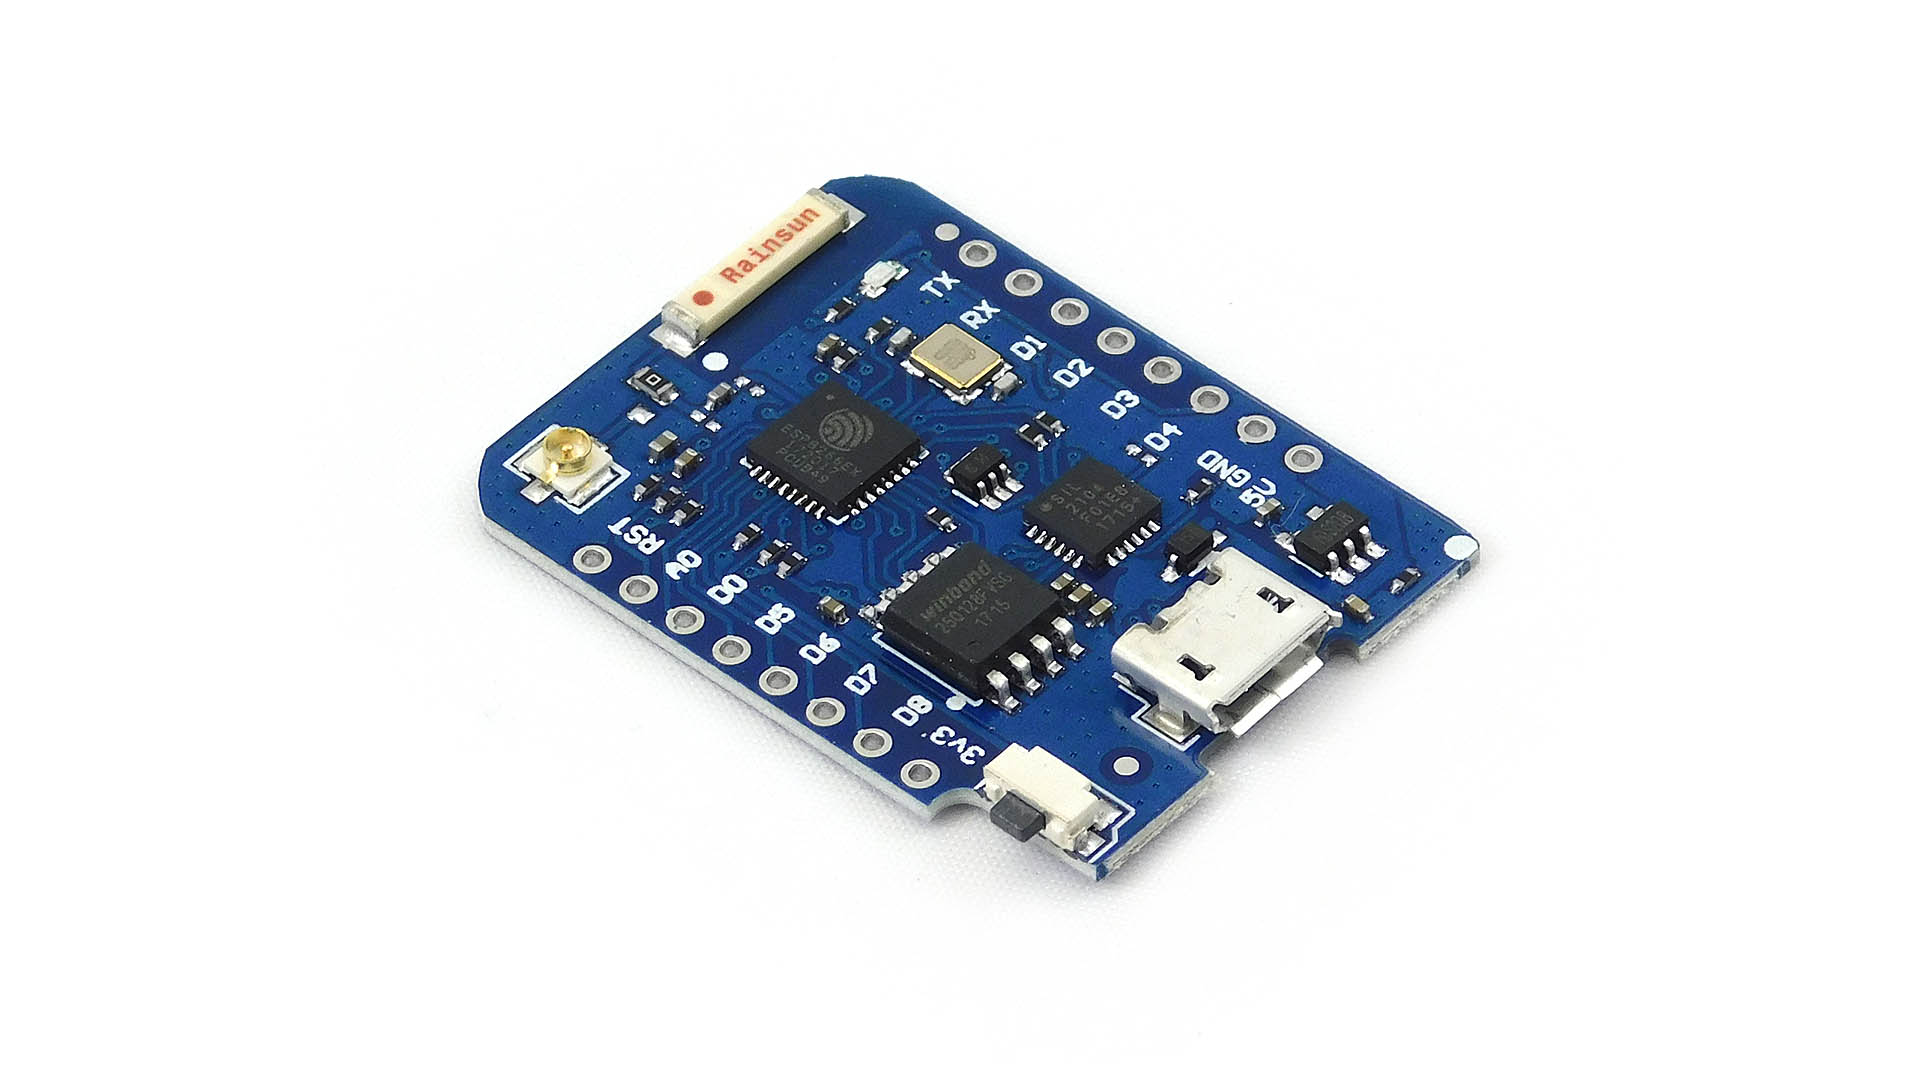 16MB WeMos D1 Mini Pro # NodeMcu # ESP8266 ESP-8266EX CP2104 for Arduino NodeMCU 